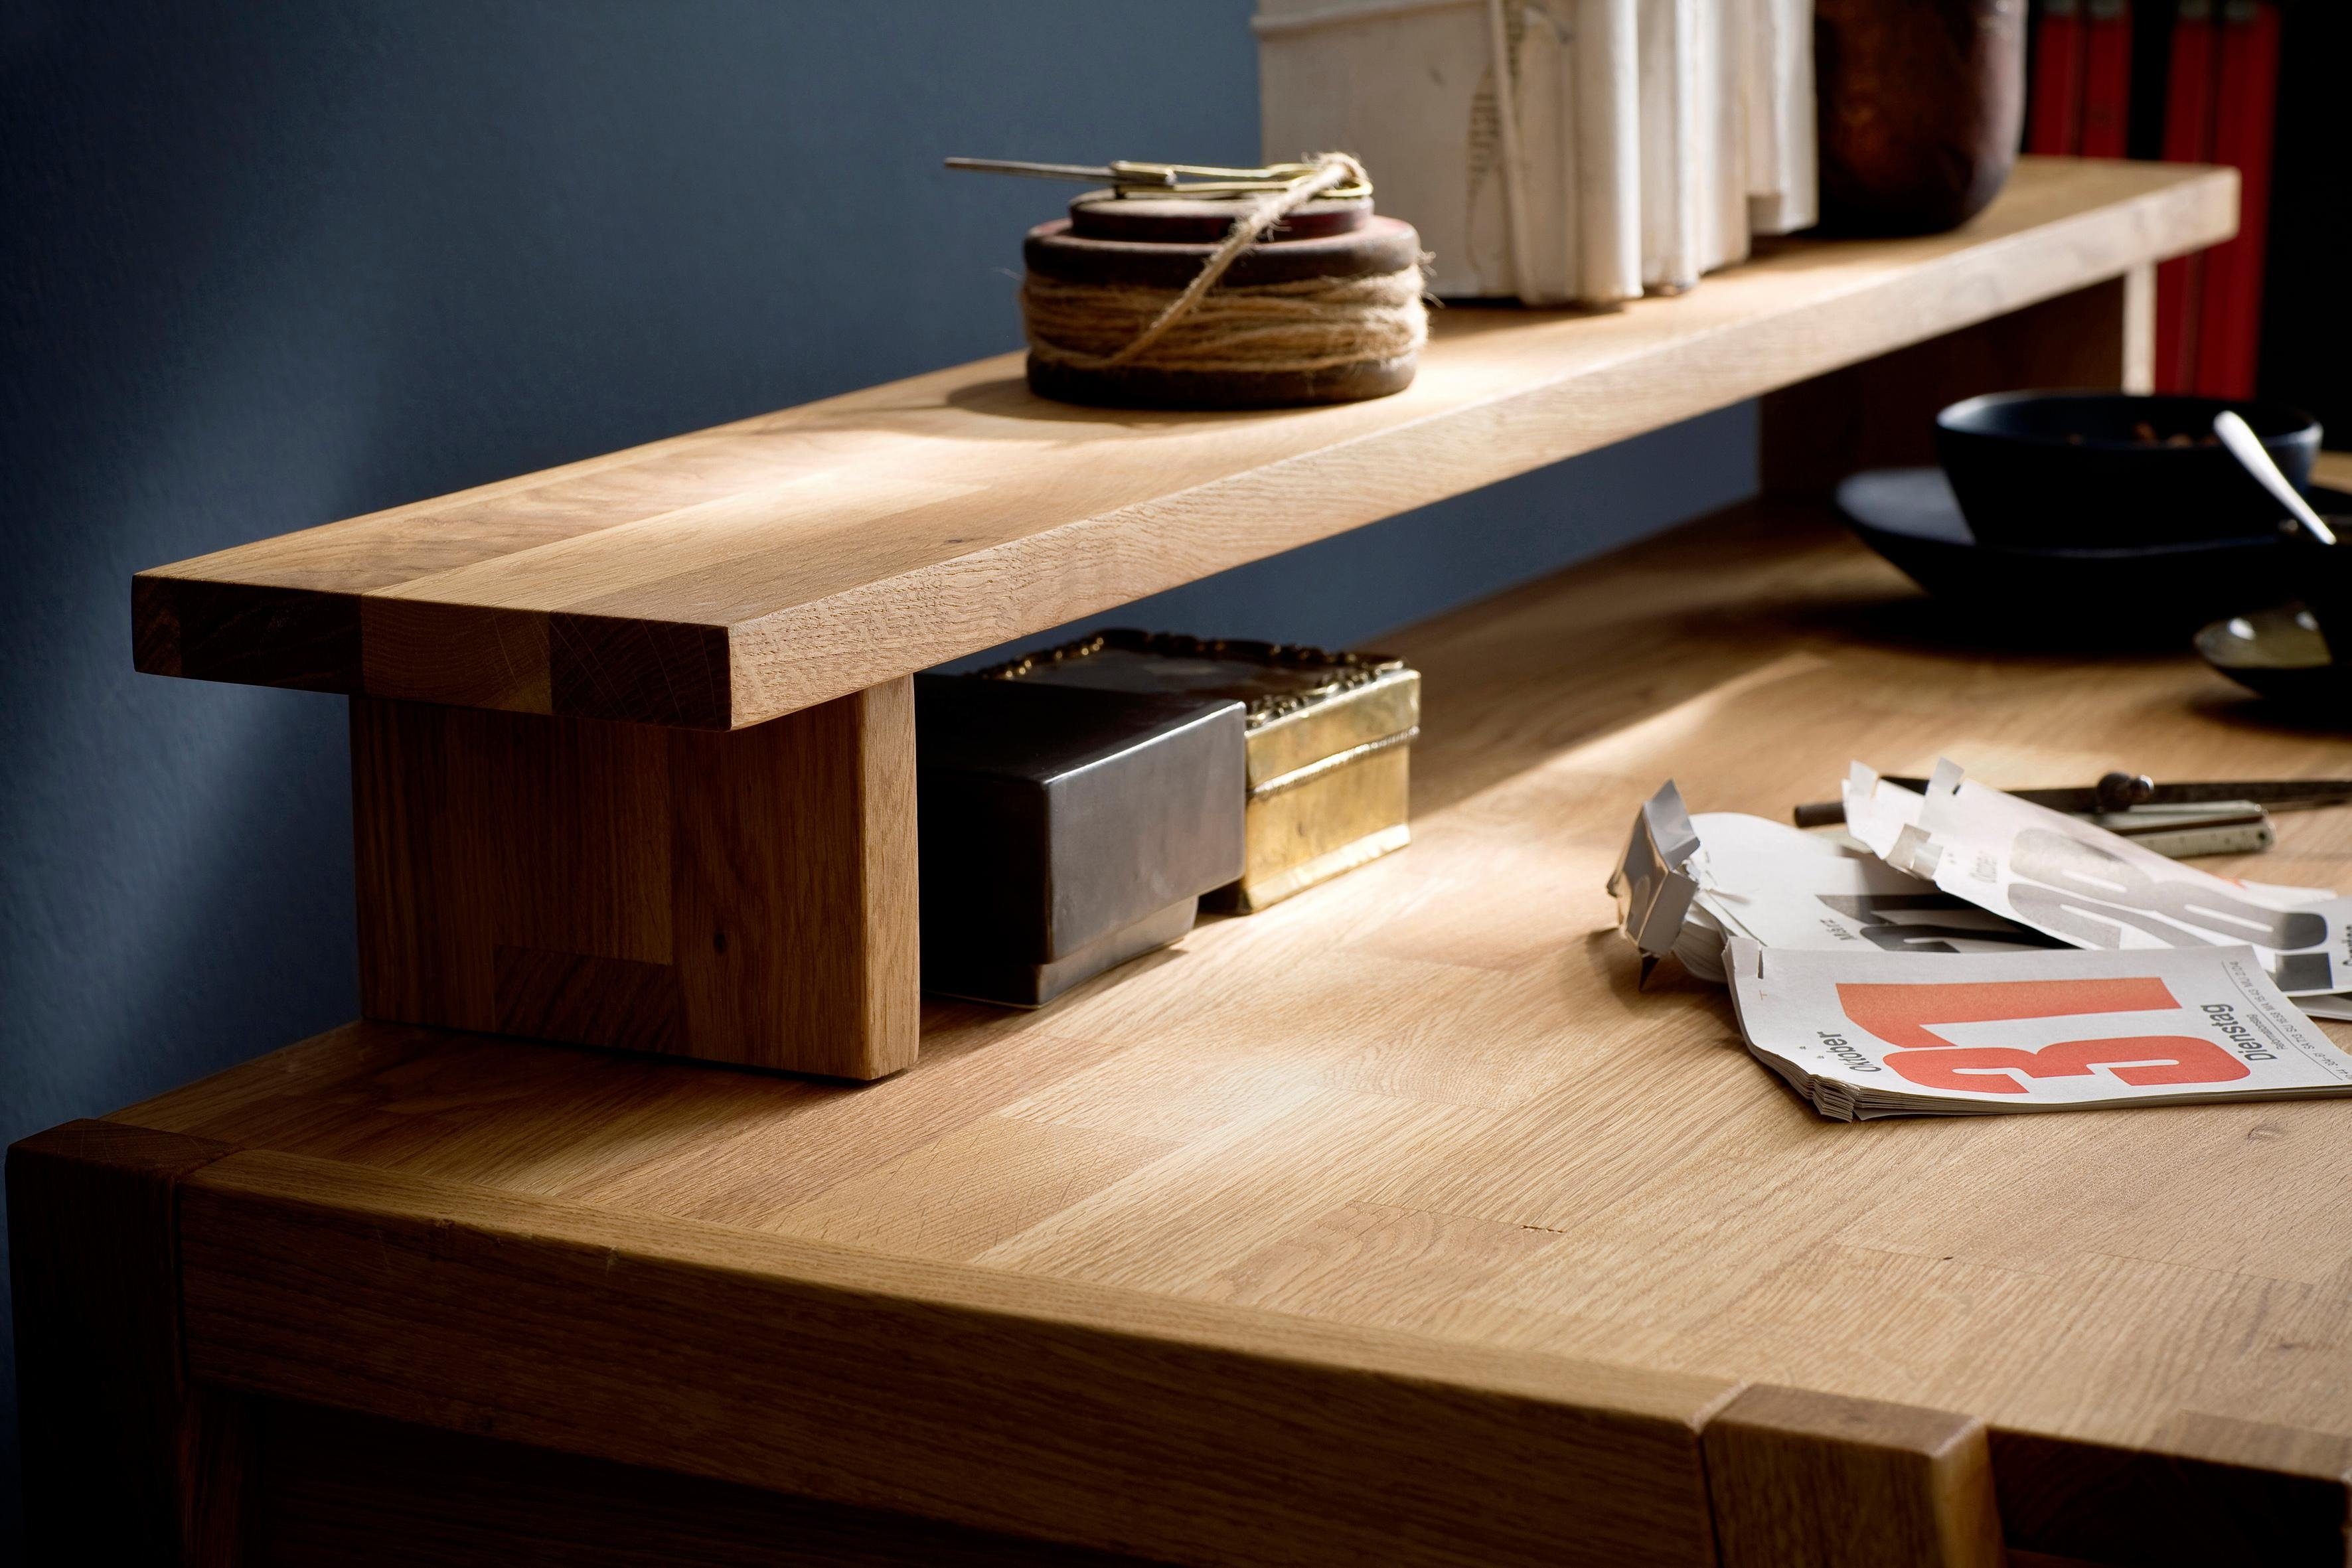 Home affaire Tischaufsatz »Dura«, aus massivem Wildeichenholz, passend zum  Schreibtisch Serienname Dura